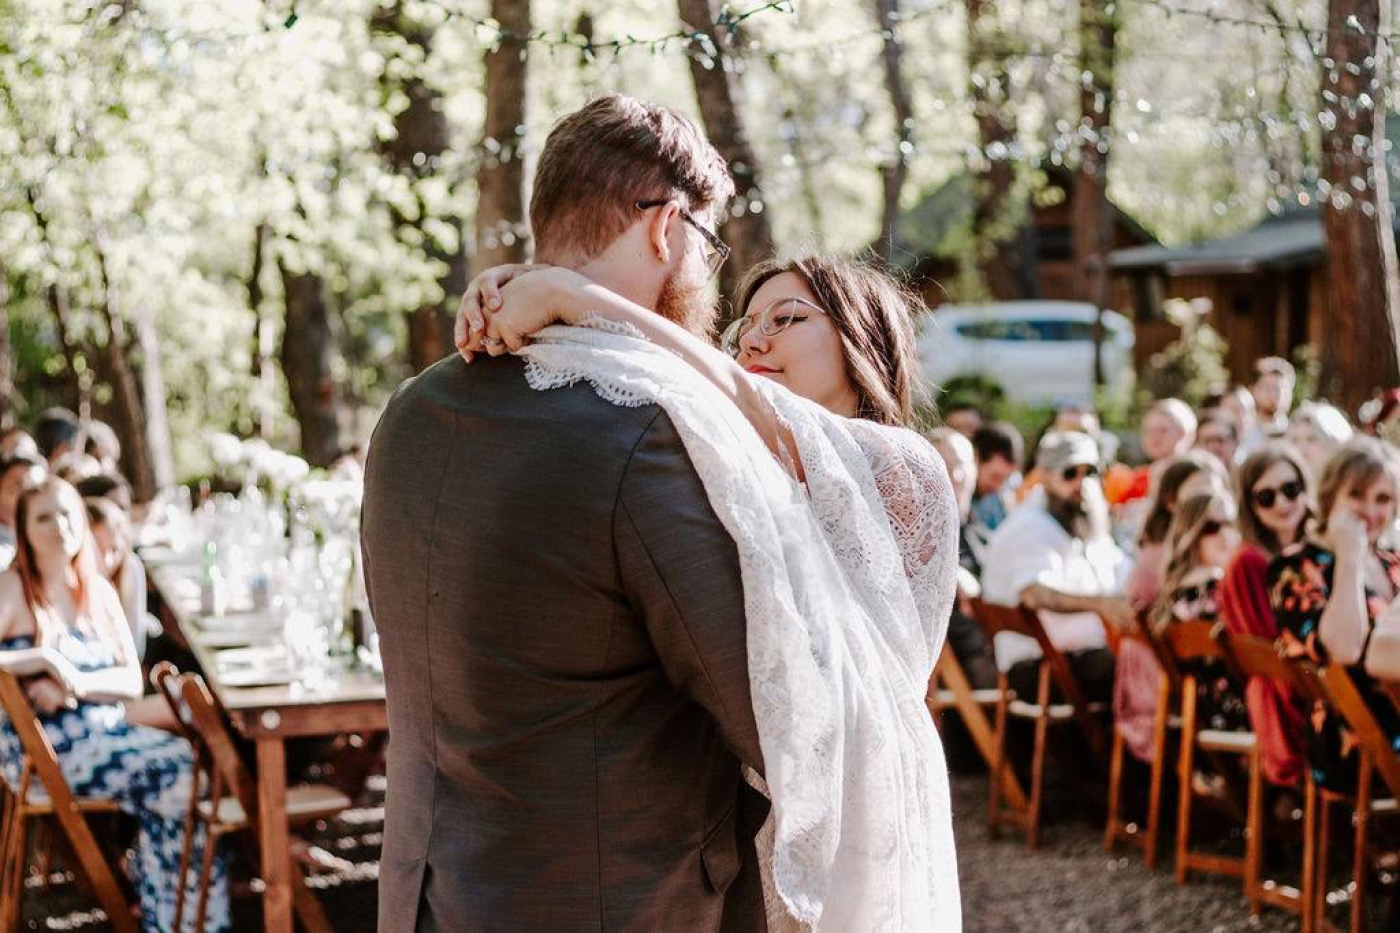 The best outdoor wedding venues in Arizona